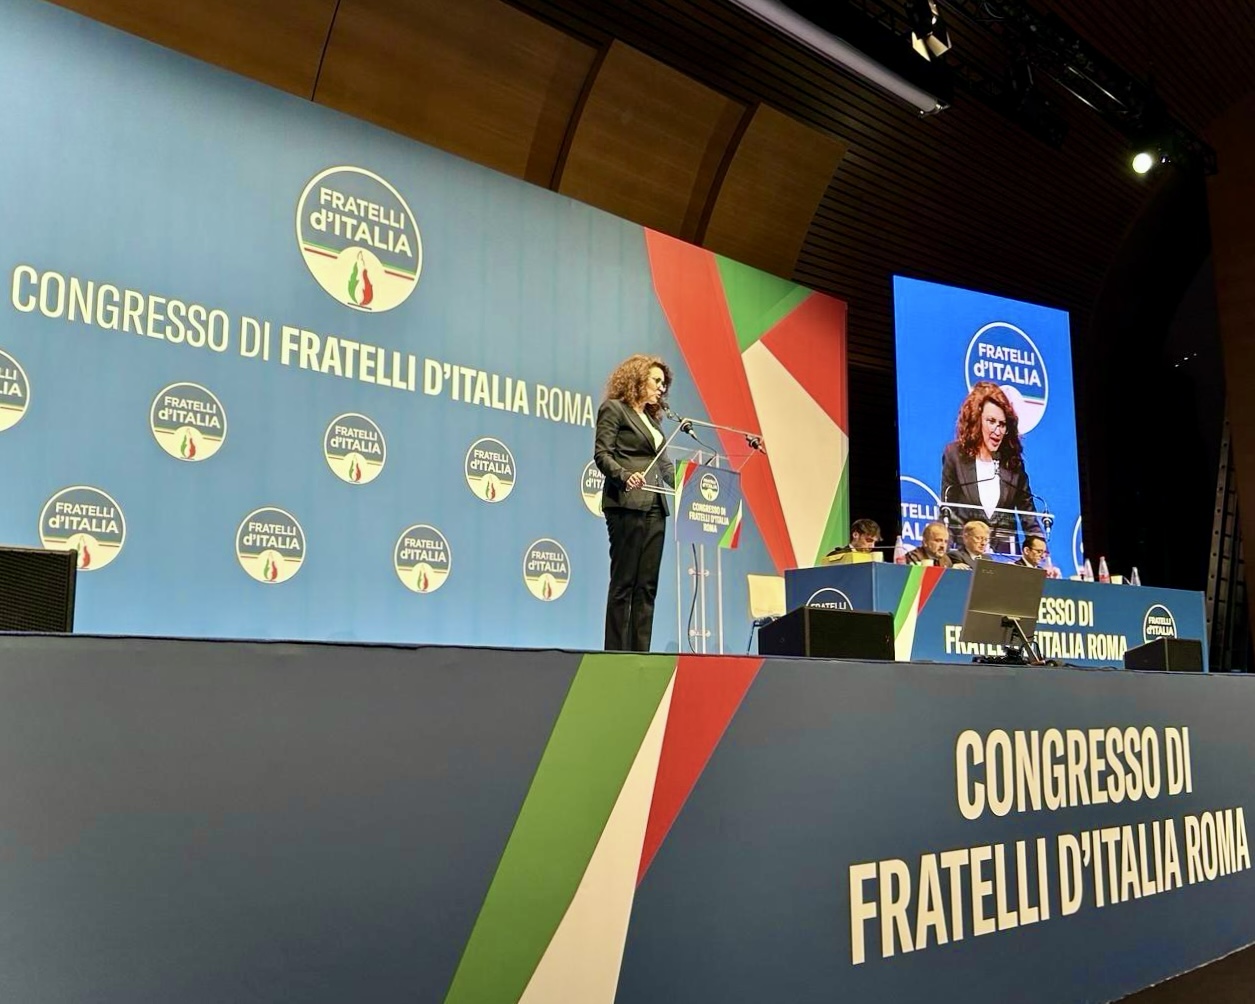 Successo per il Congresso Fratelli d’Italia Roma